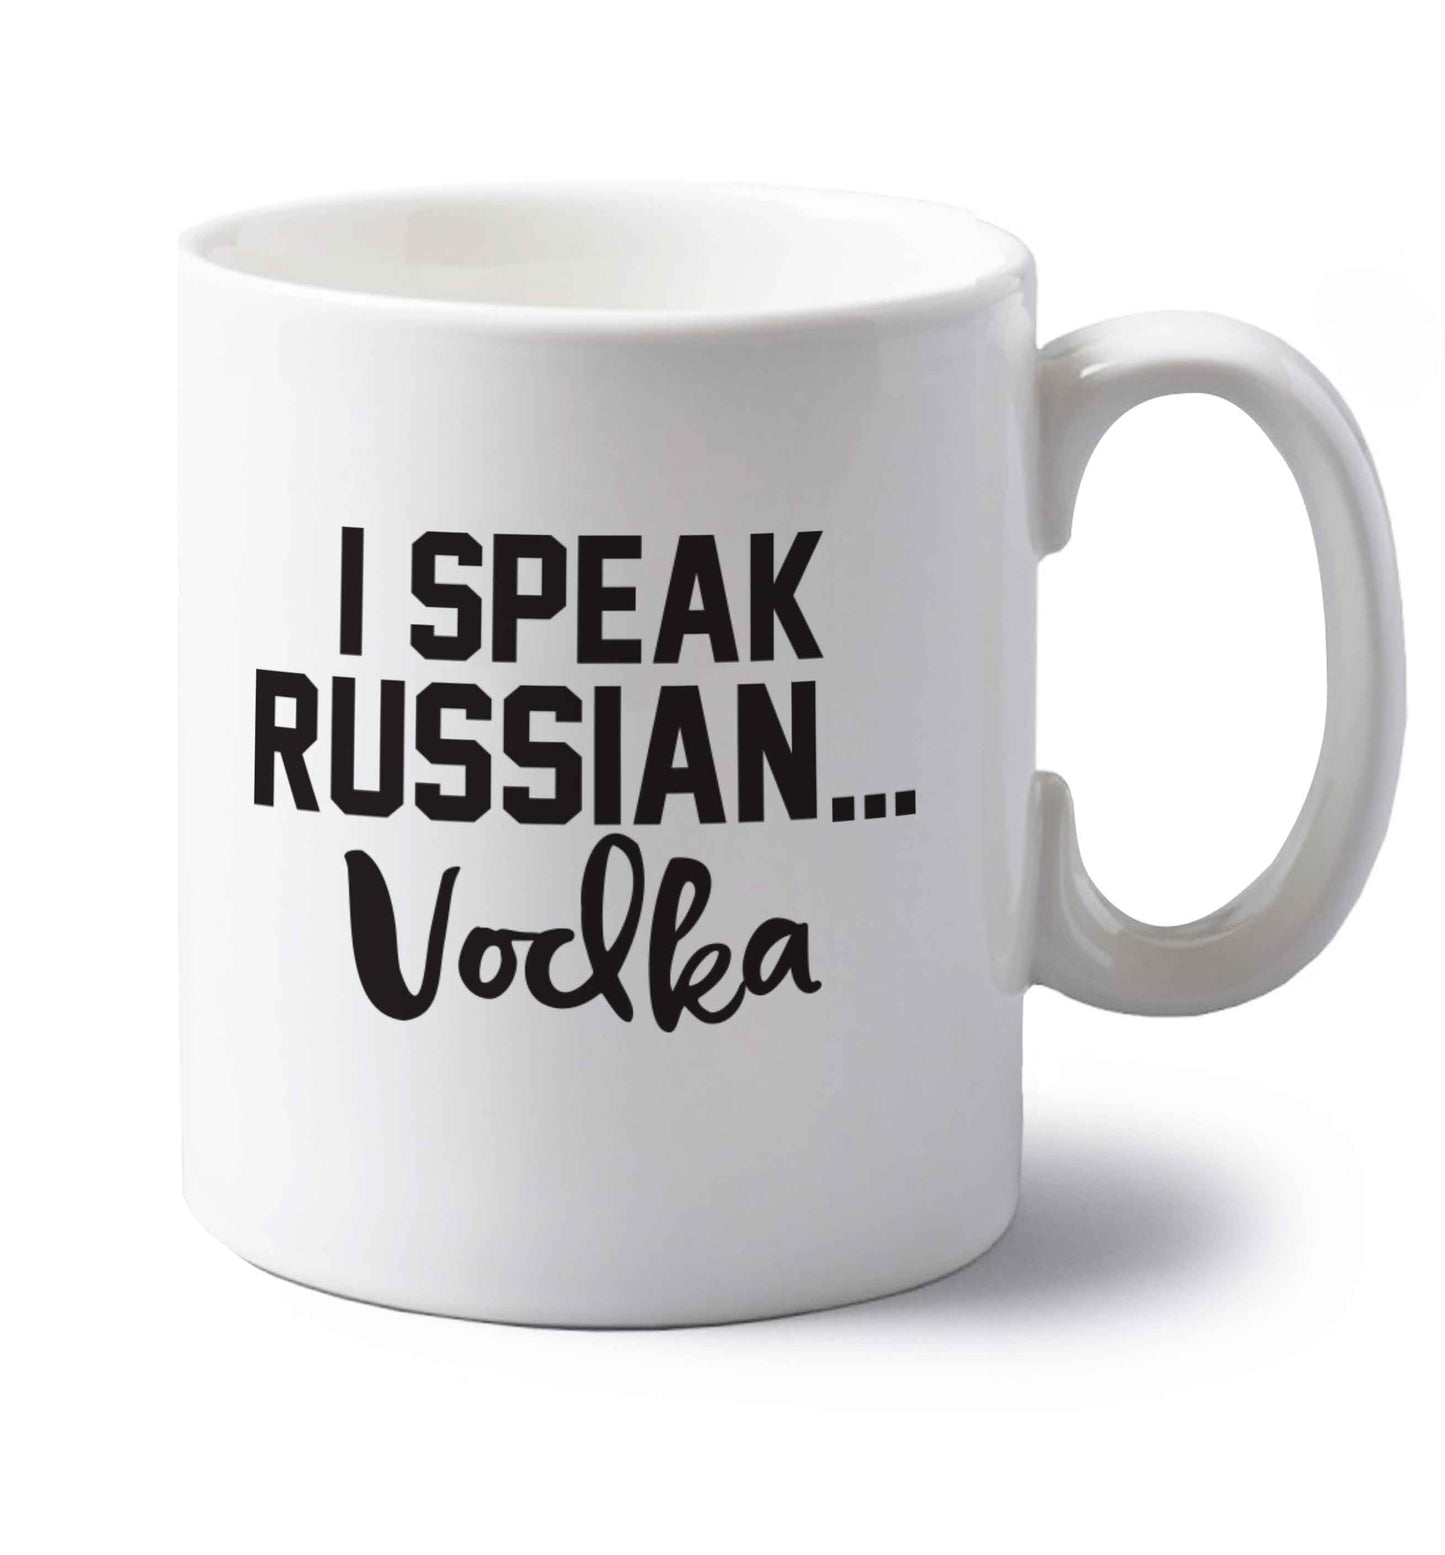 I speak russian...vodka left handed white ceramic mug 